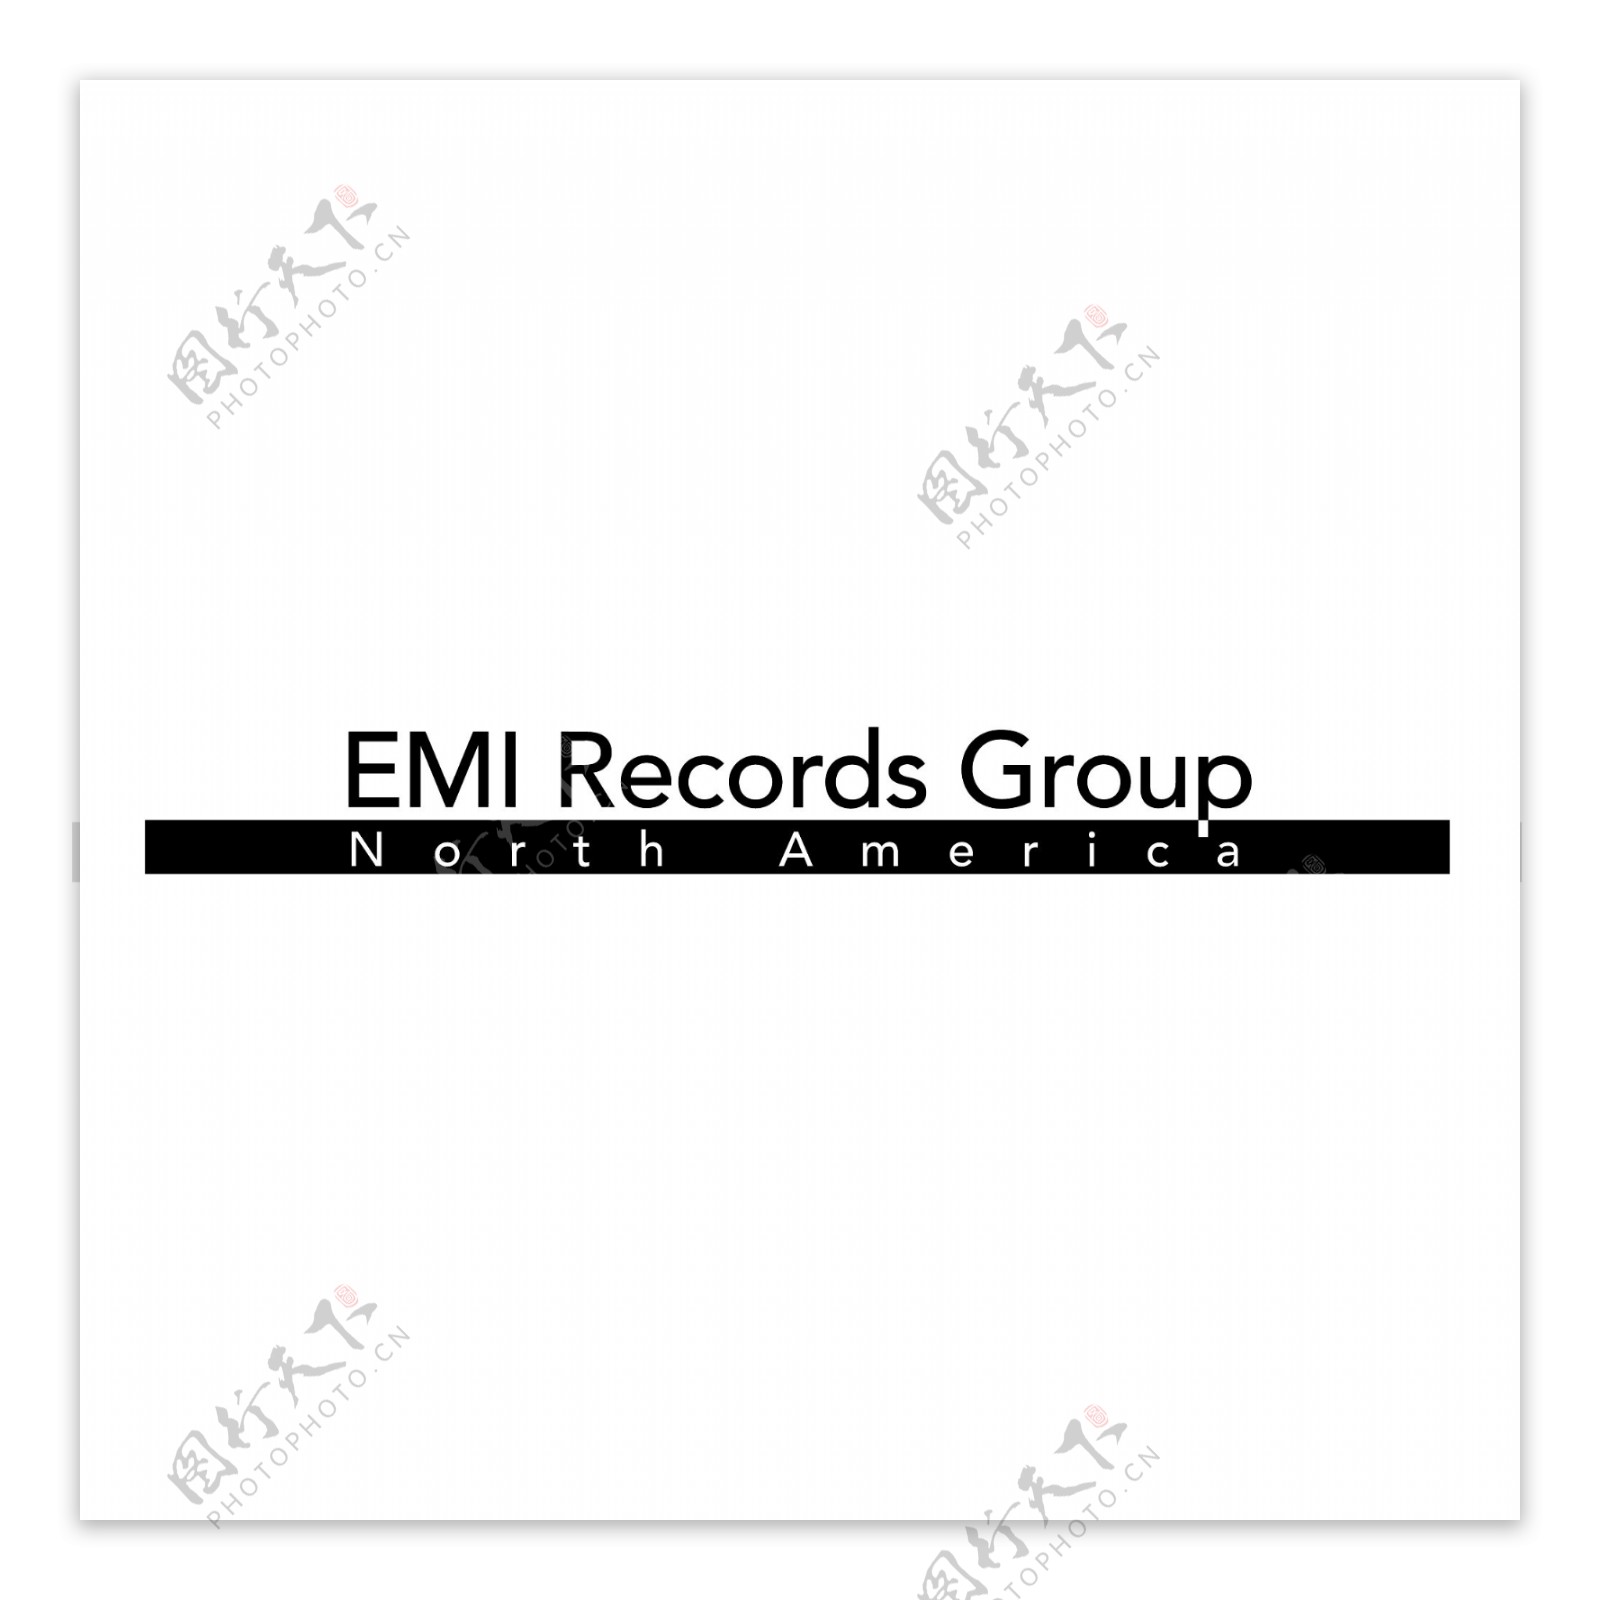 EMI唱片集团